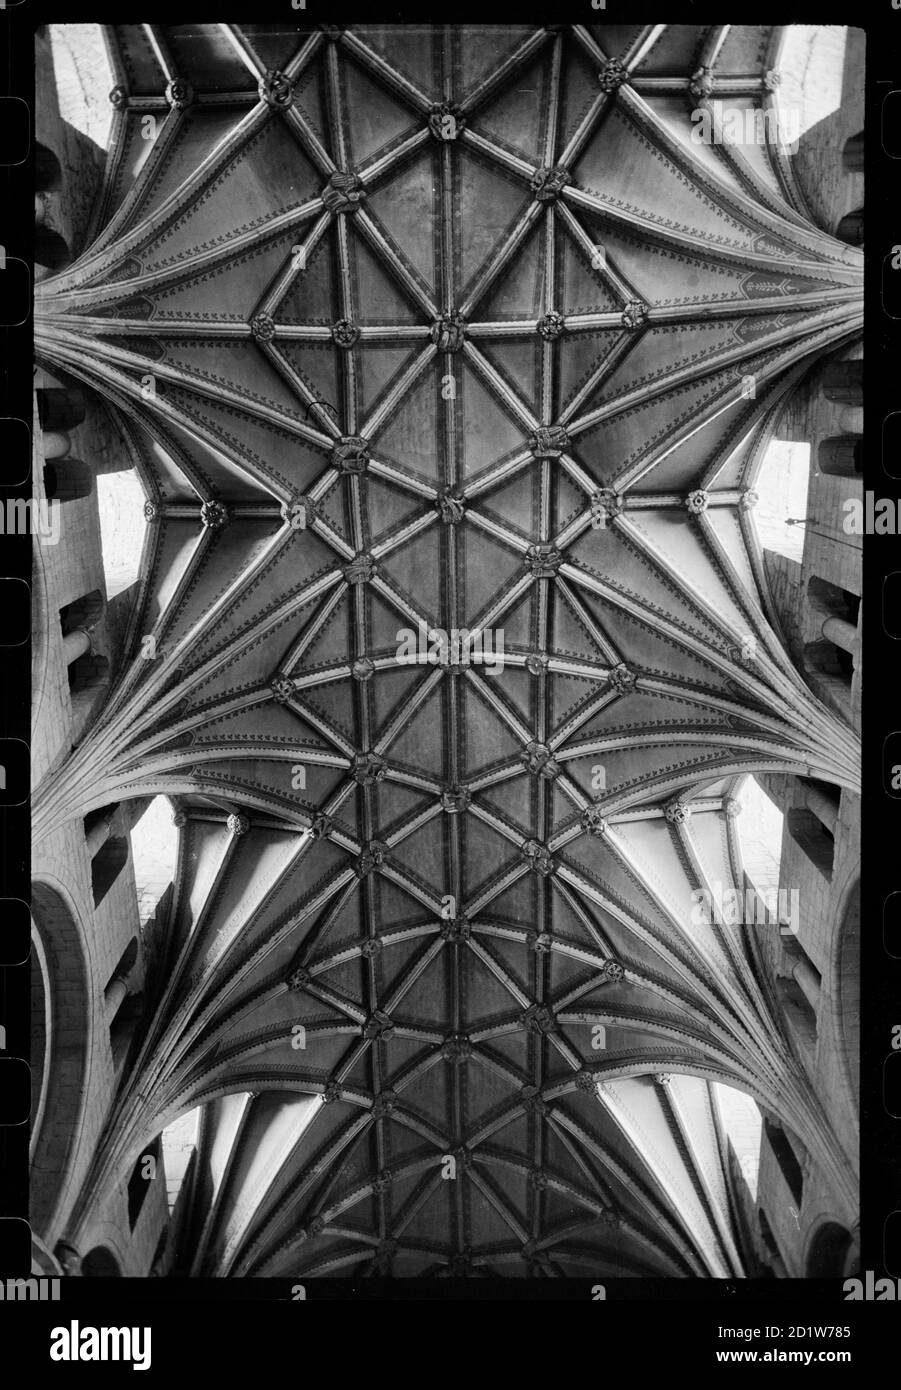 Vista dettagliata del soffitto a volta lierne nella navata centrale dell'abbazia di Tewkesbury, Tewkesbury, Gloucestershire, Regno Unito. Foto Stock